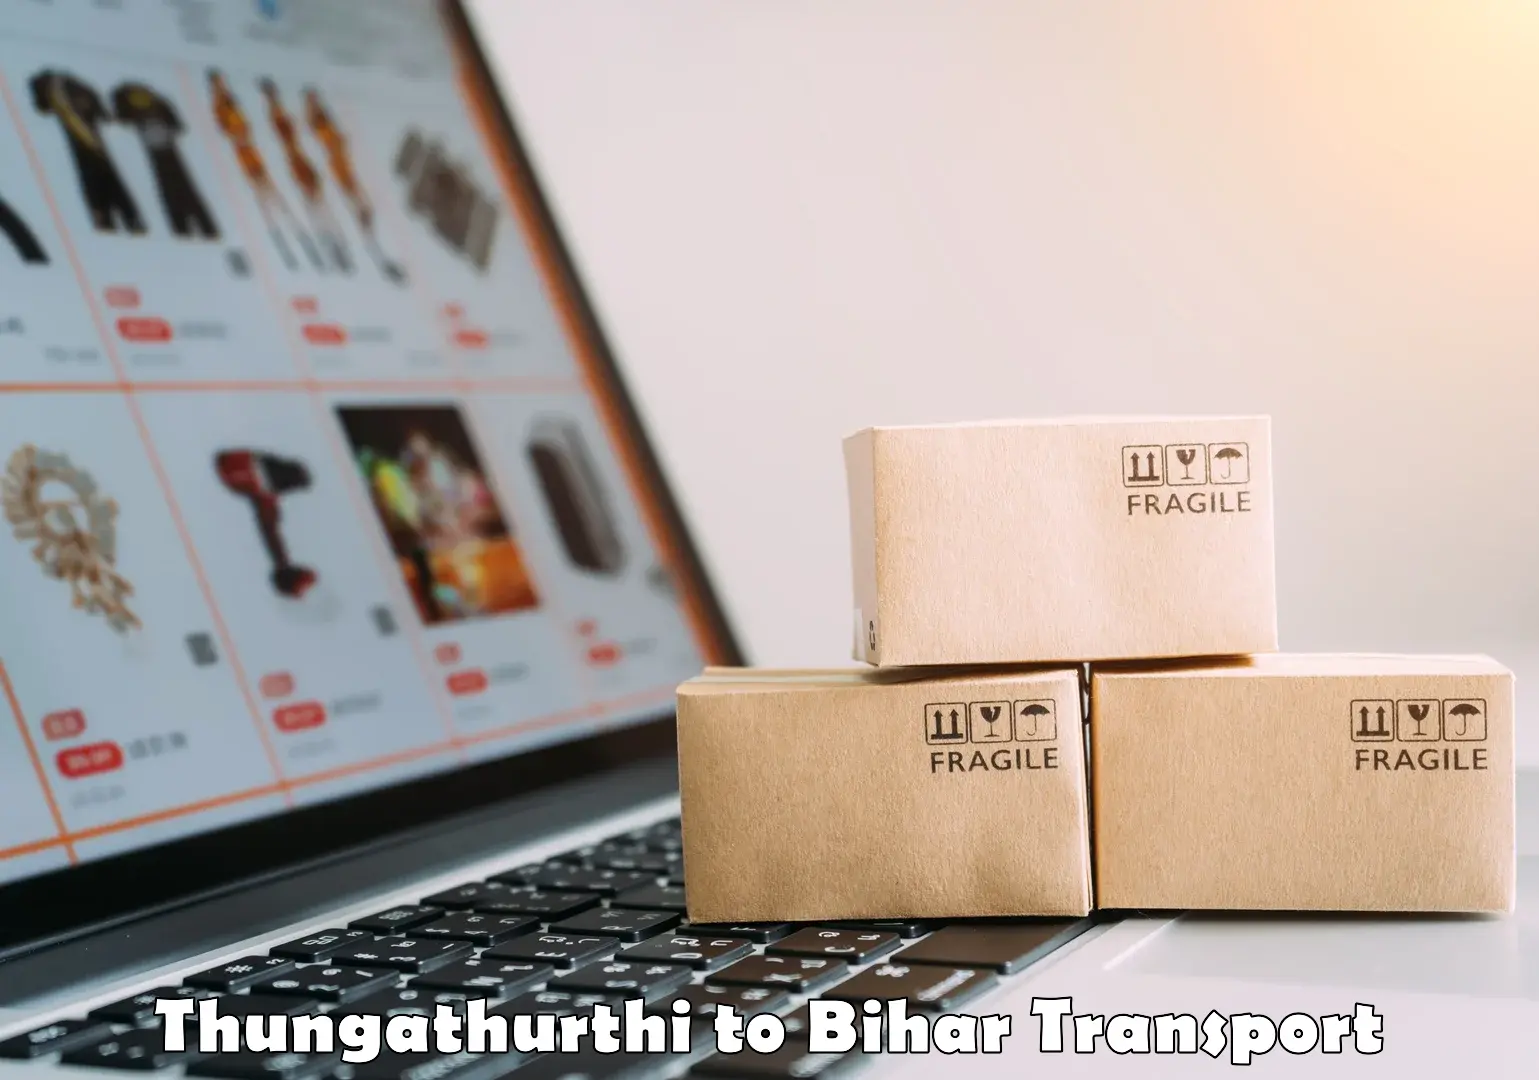 Cargo train transport services Thungathurthi to Hazrat Jandaha